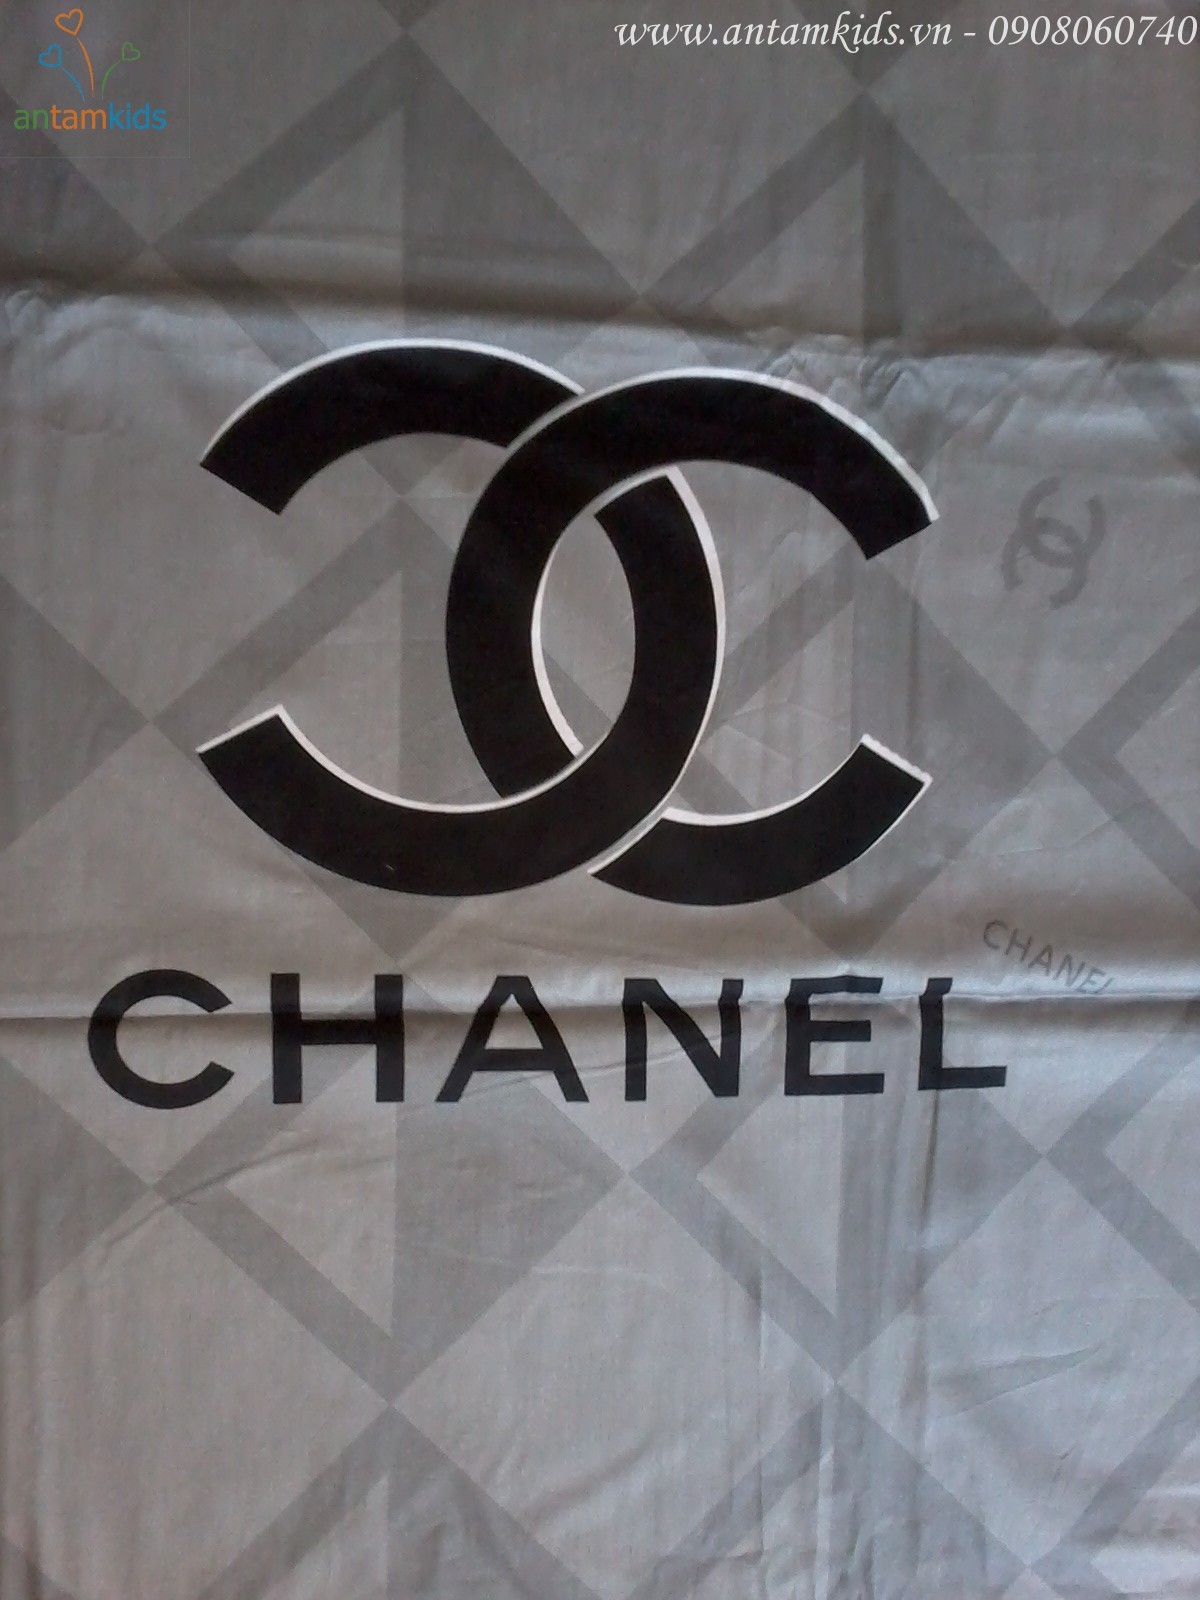 Chăn ga gối mền drap thương hiệu hàng hiệu Chanel hồng xám đẹp sang trọng quyến rũ & cá tính sành điệu - AnTamKids.vn